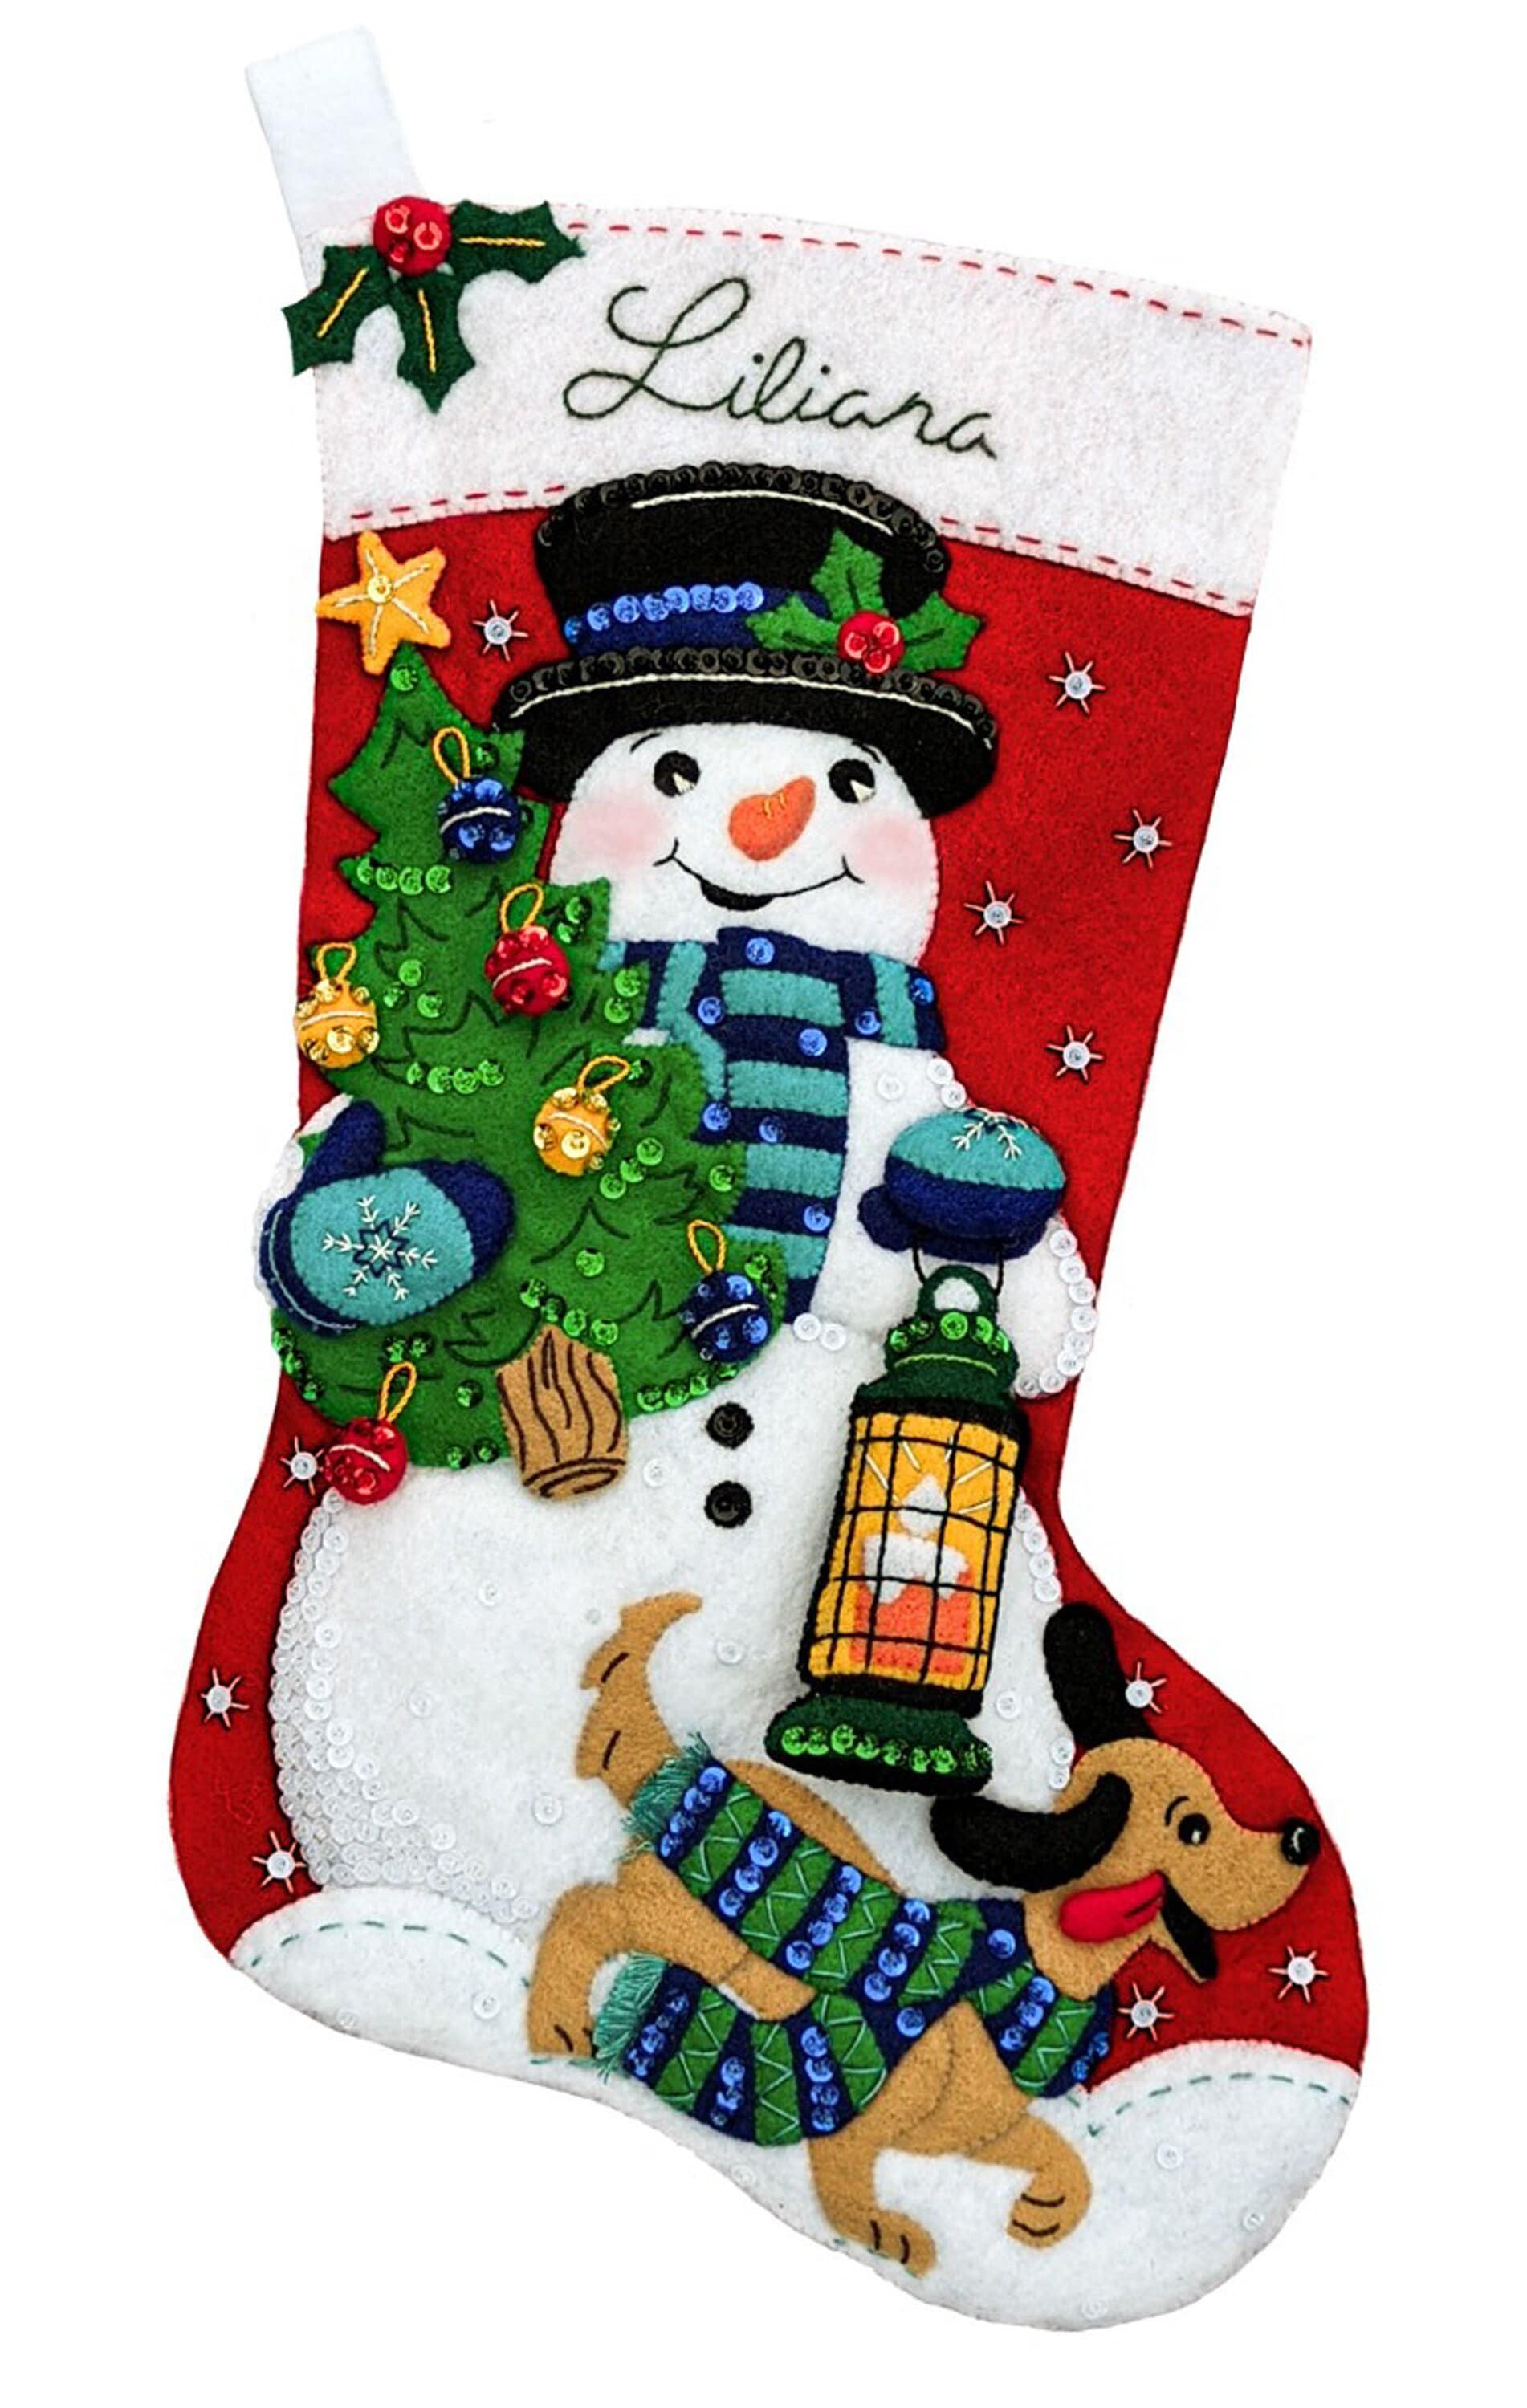 Sugar Plum Fairy Felt Christmas Stocking Kit - Bucilla Felt Stockings at  Weekend Kits